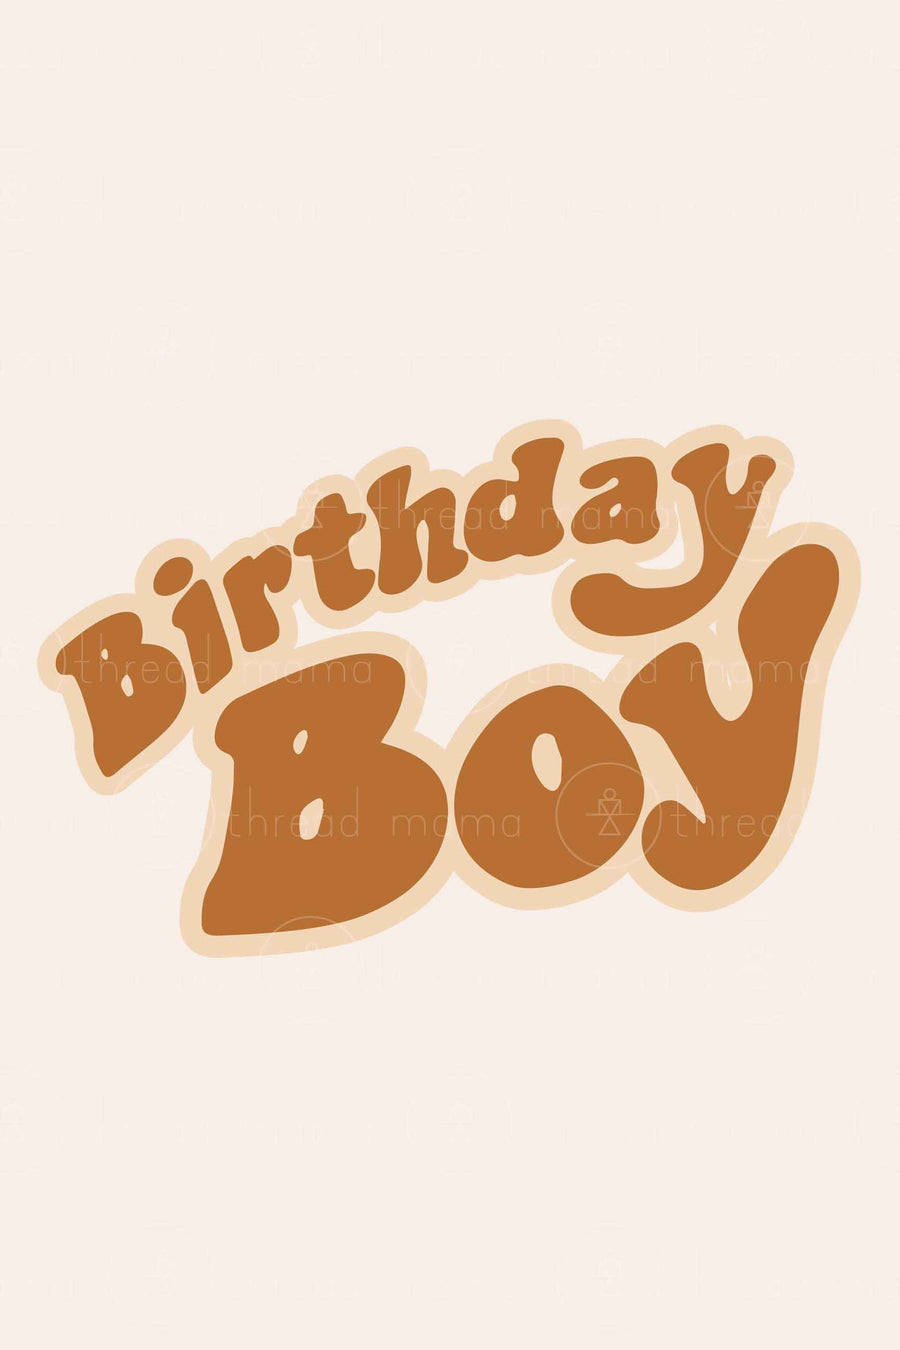 Birthday Girl and Boy (Printable Poster)